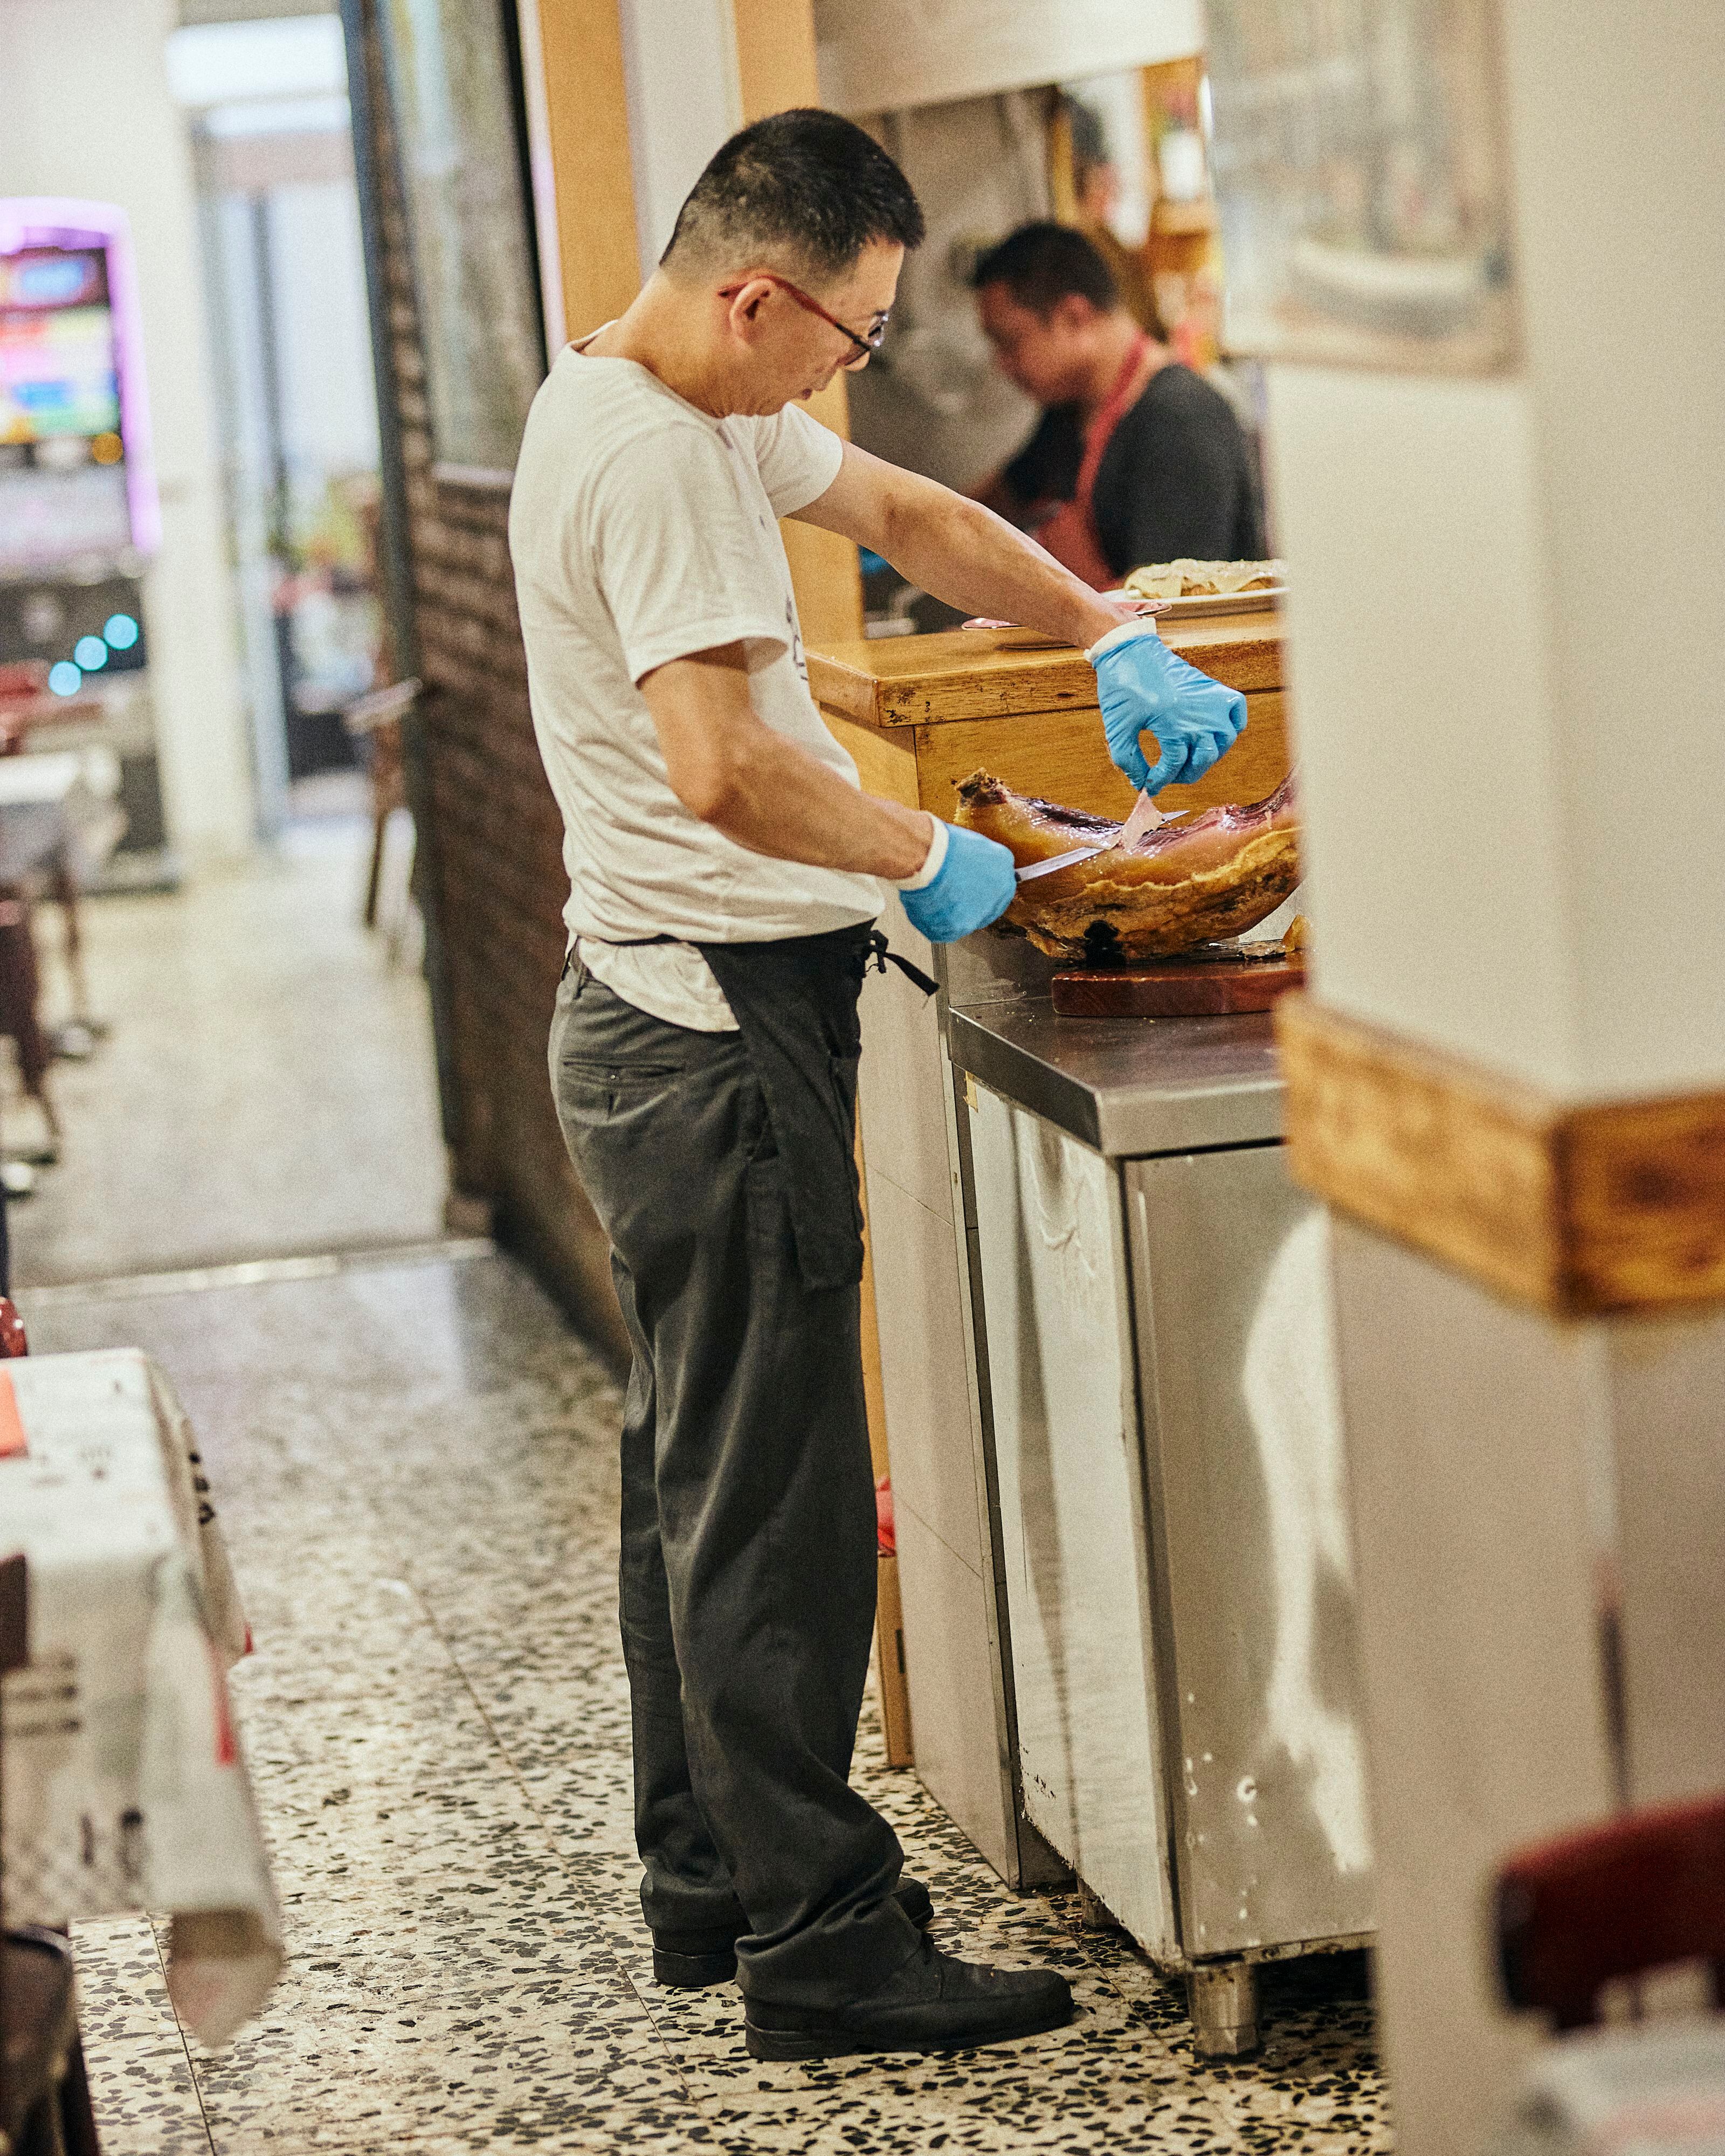  Axín corta con maestría uno de los productos favoritos de sus clientes, jamón ibérico, en Casa Axín. 